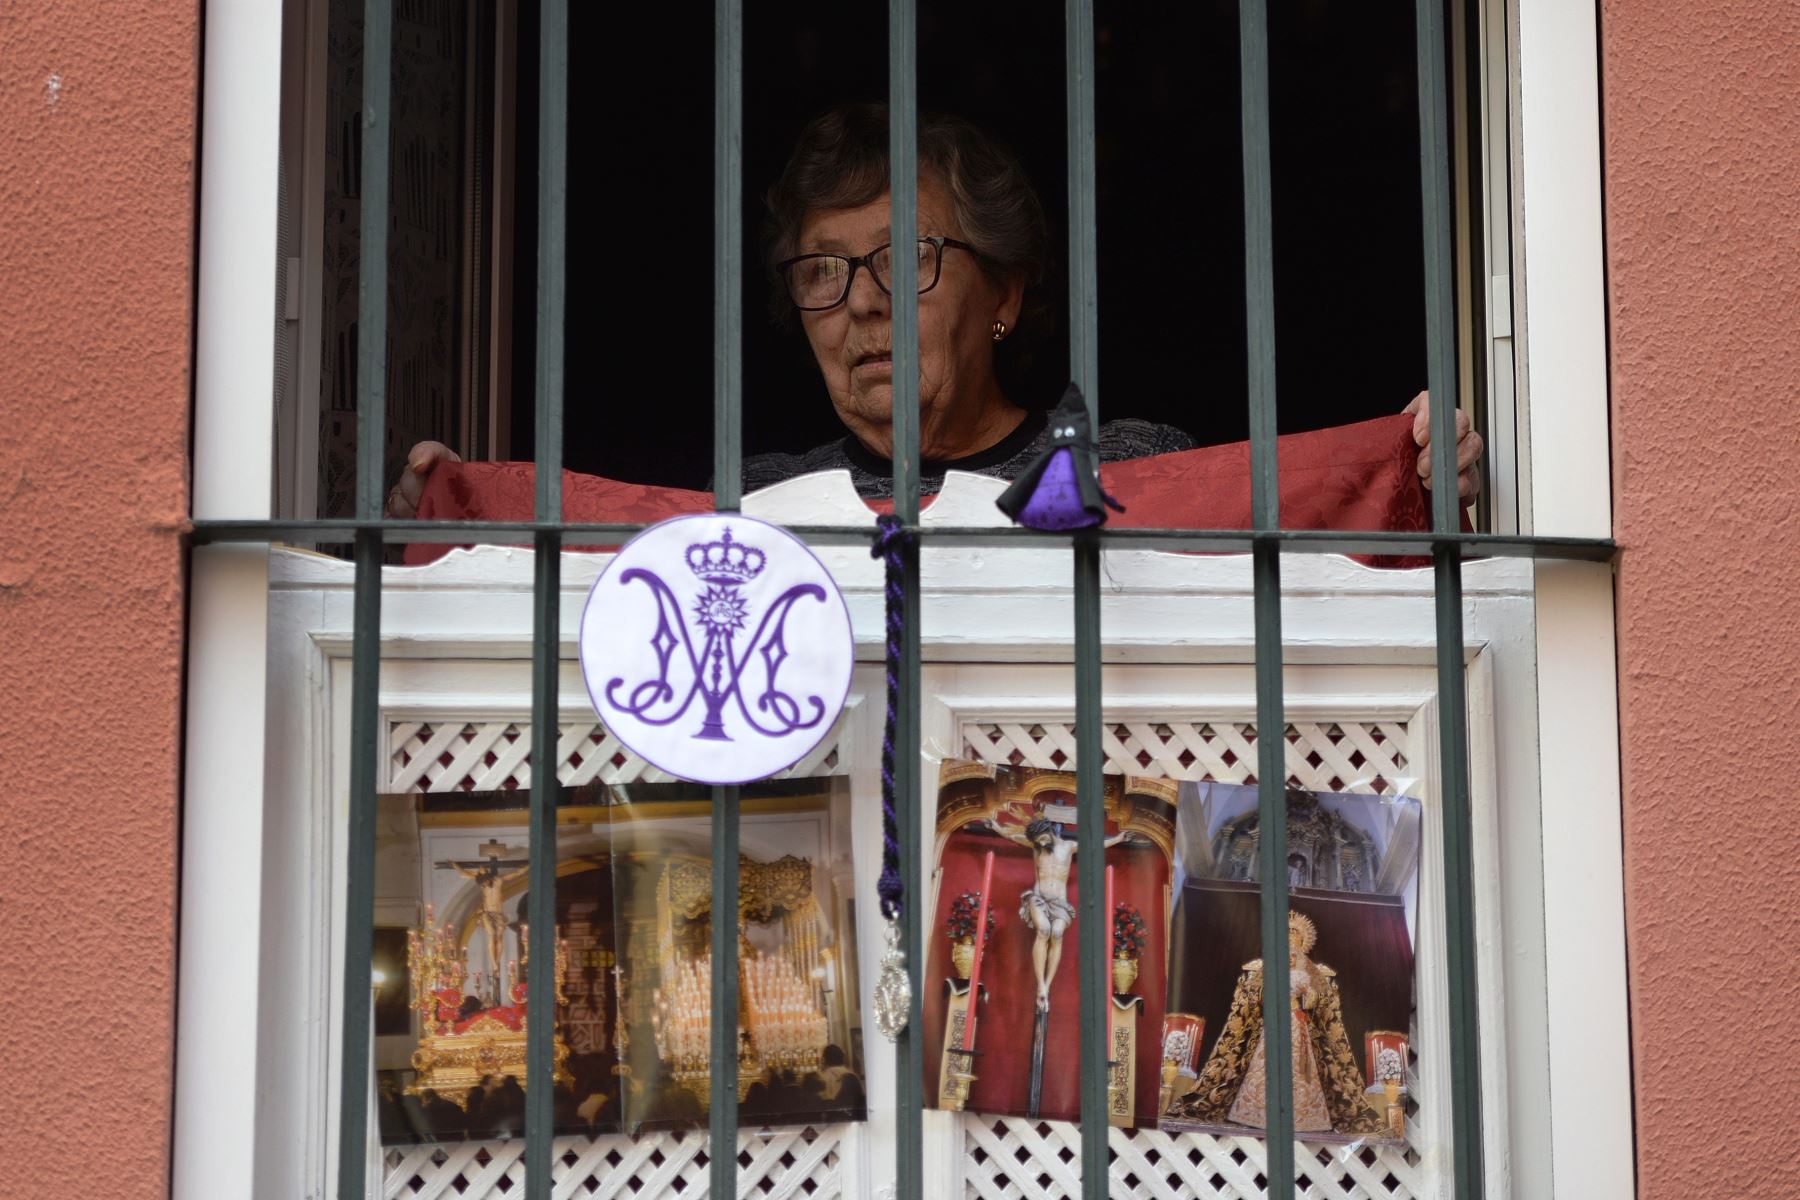 Una mujer decora su ventana con imágenes religiosas, en Sevilla, donde las procesiones de Semana Santa han sido canceladas debido a un cierre nacional para evitar la propagación deL coronavirus.
Foto: AFP